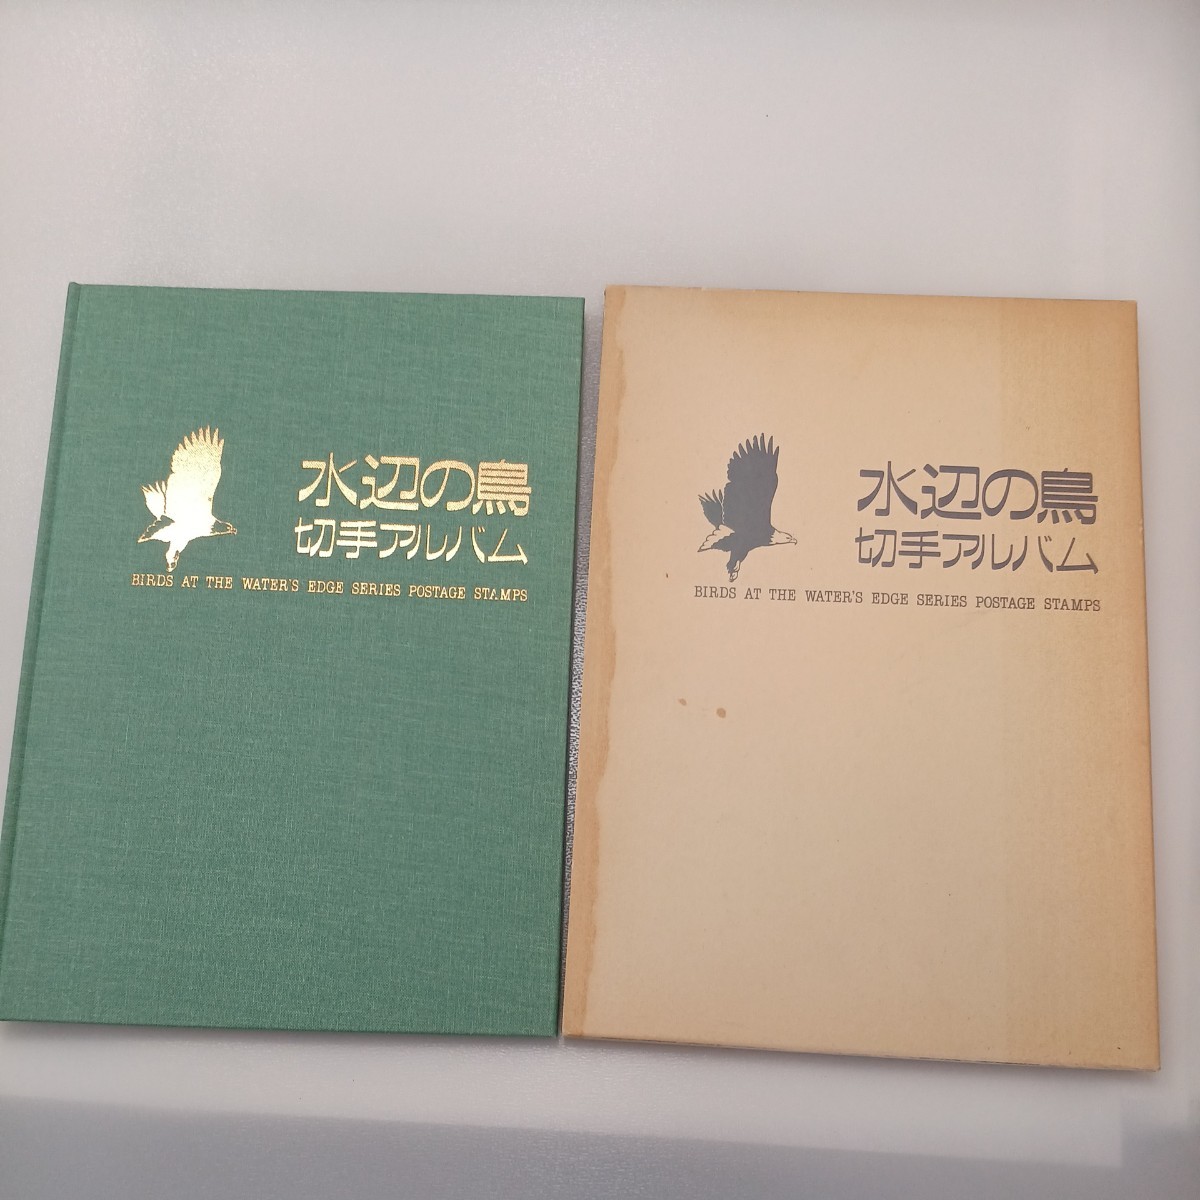 zaa-534♪『水辺の鳥 切手アルバム』平成5年 1993年発行 切手16枚セット 切手帳 コレクション 切手完品 _画像1